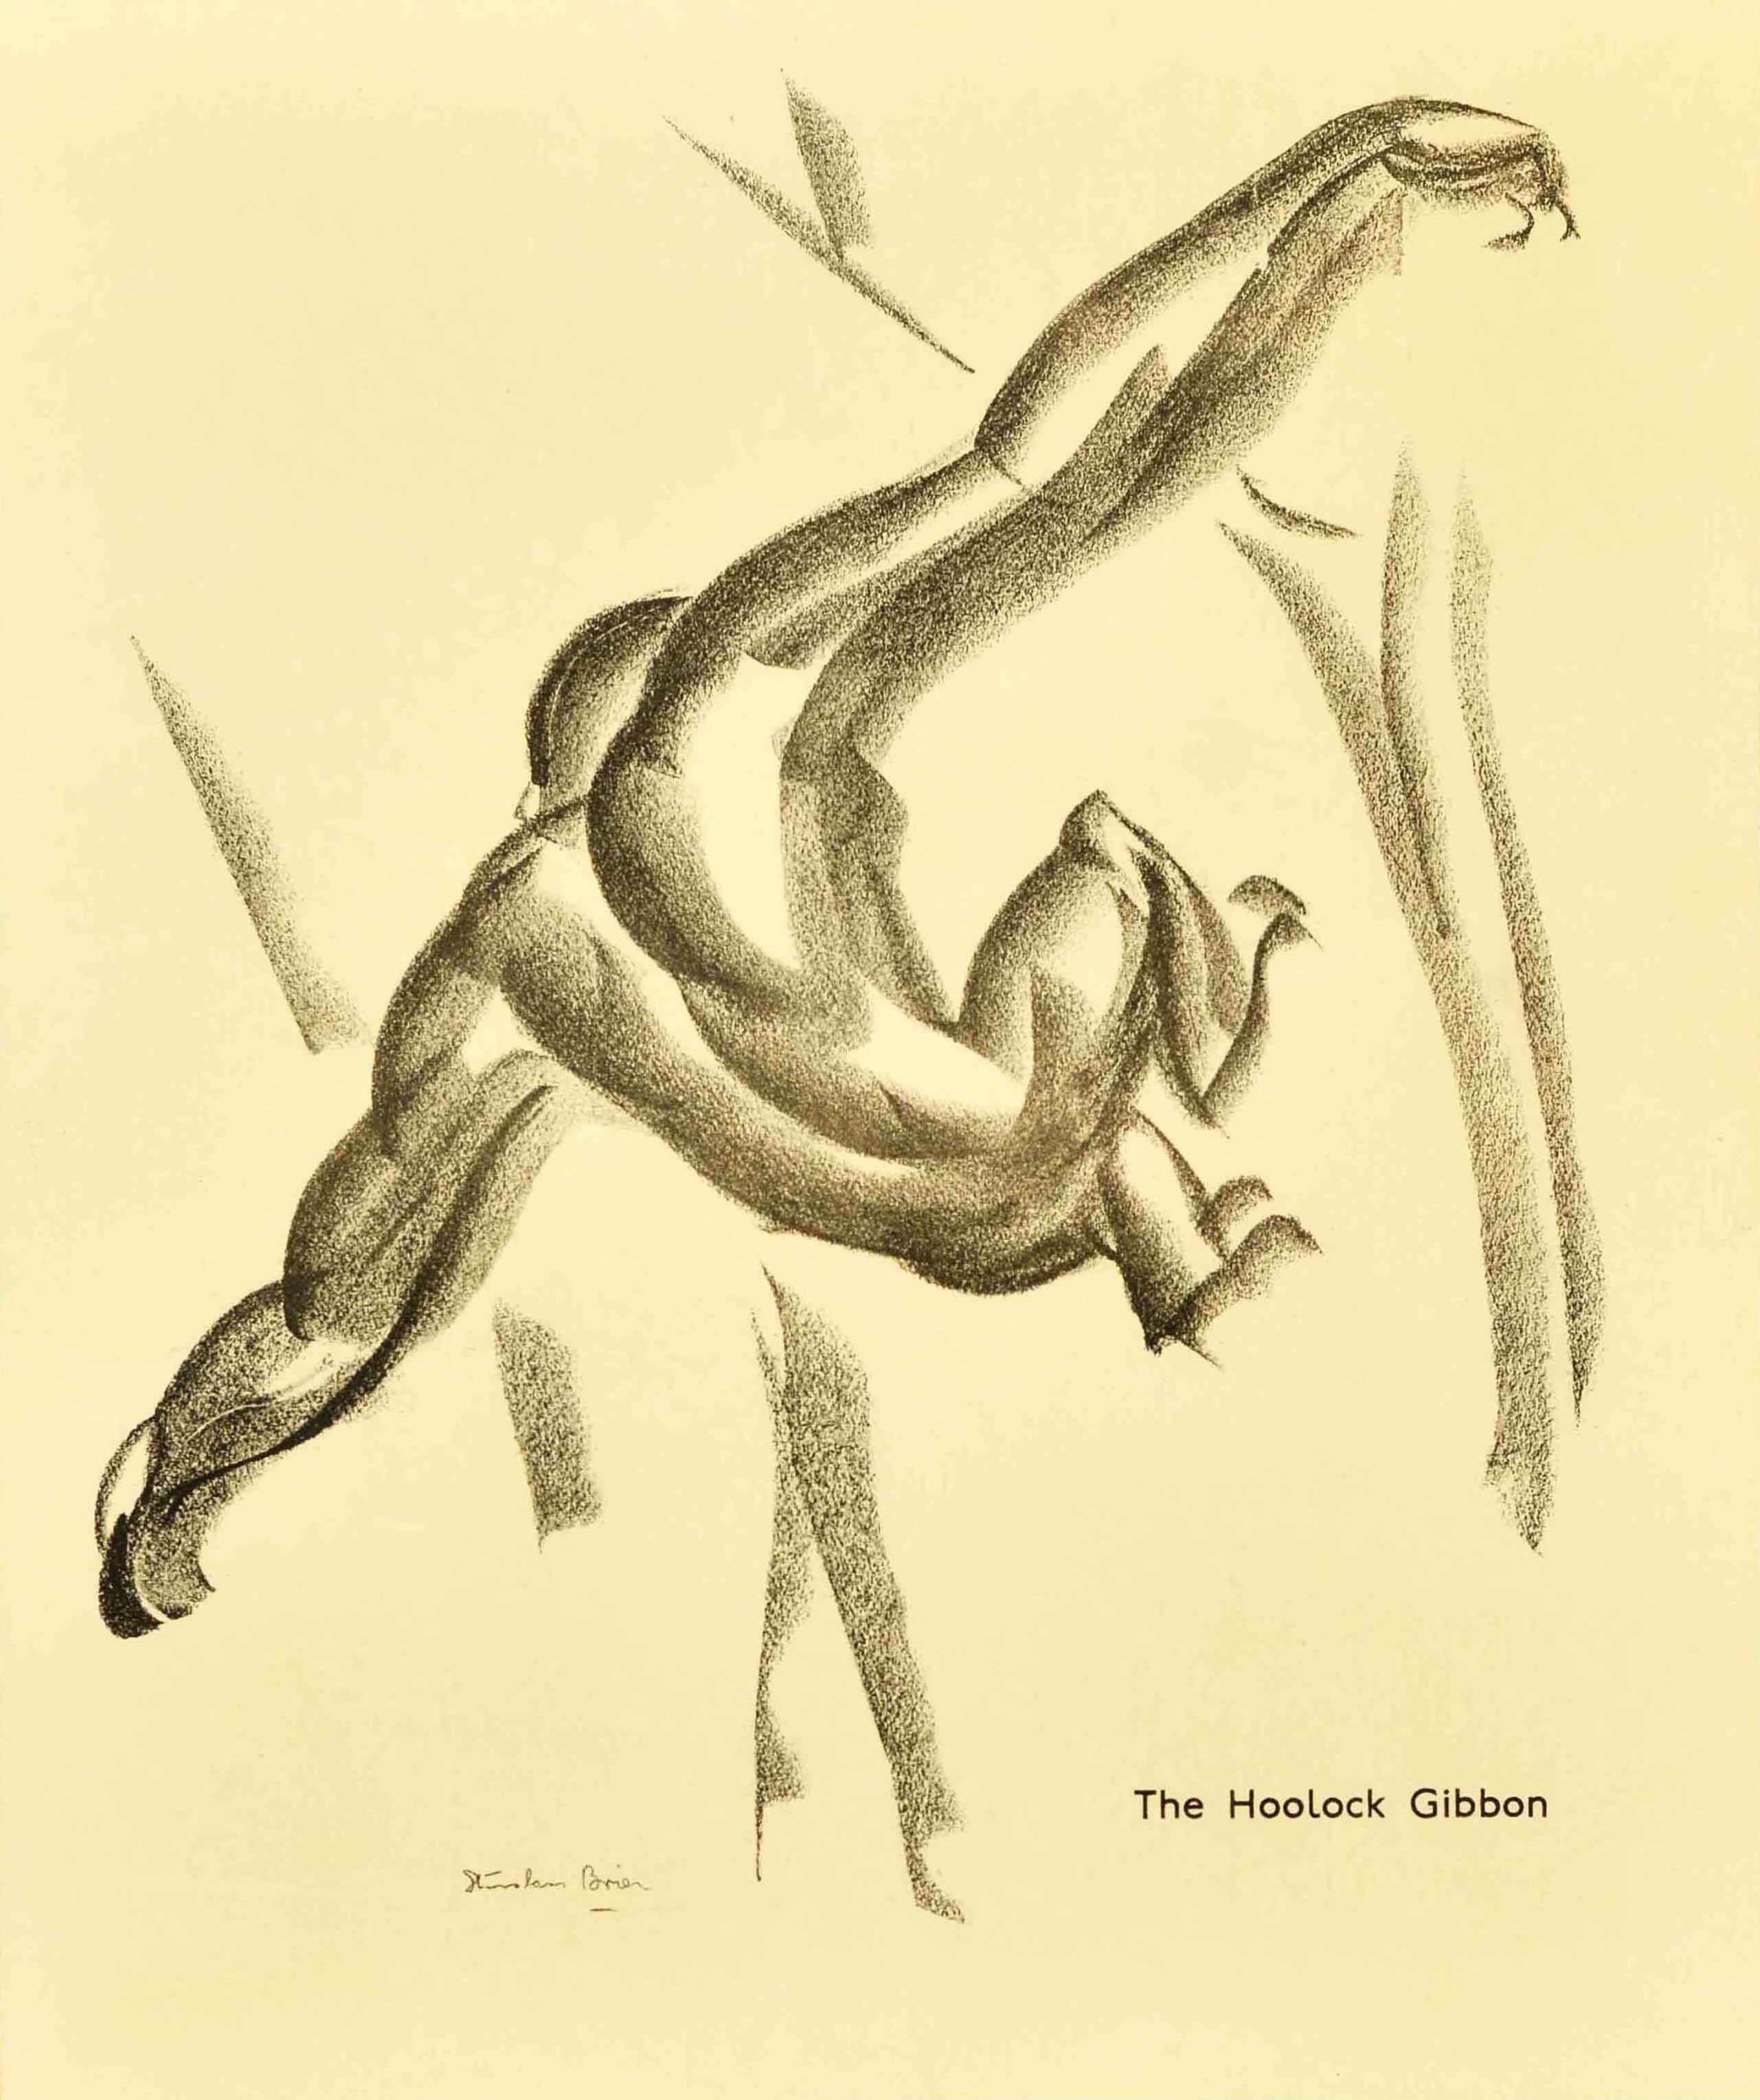 Original Vintage-Plakat für den Londoner Zoo mit einer großartigen Kohlezeichnung des Hoolock Gibbon, der sich durch die Bäume schwingt, von dem polnischen Künstler G. Stanislaus Brien (der 1935 Plakate für die Londoner Verkehrsbetriebe sowie für